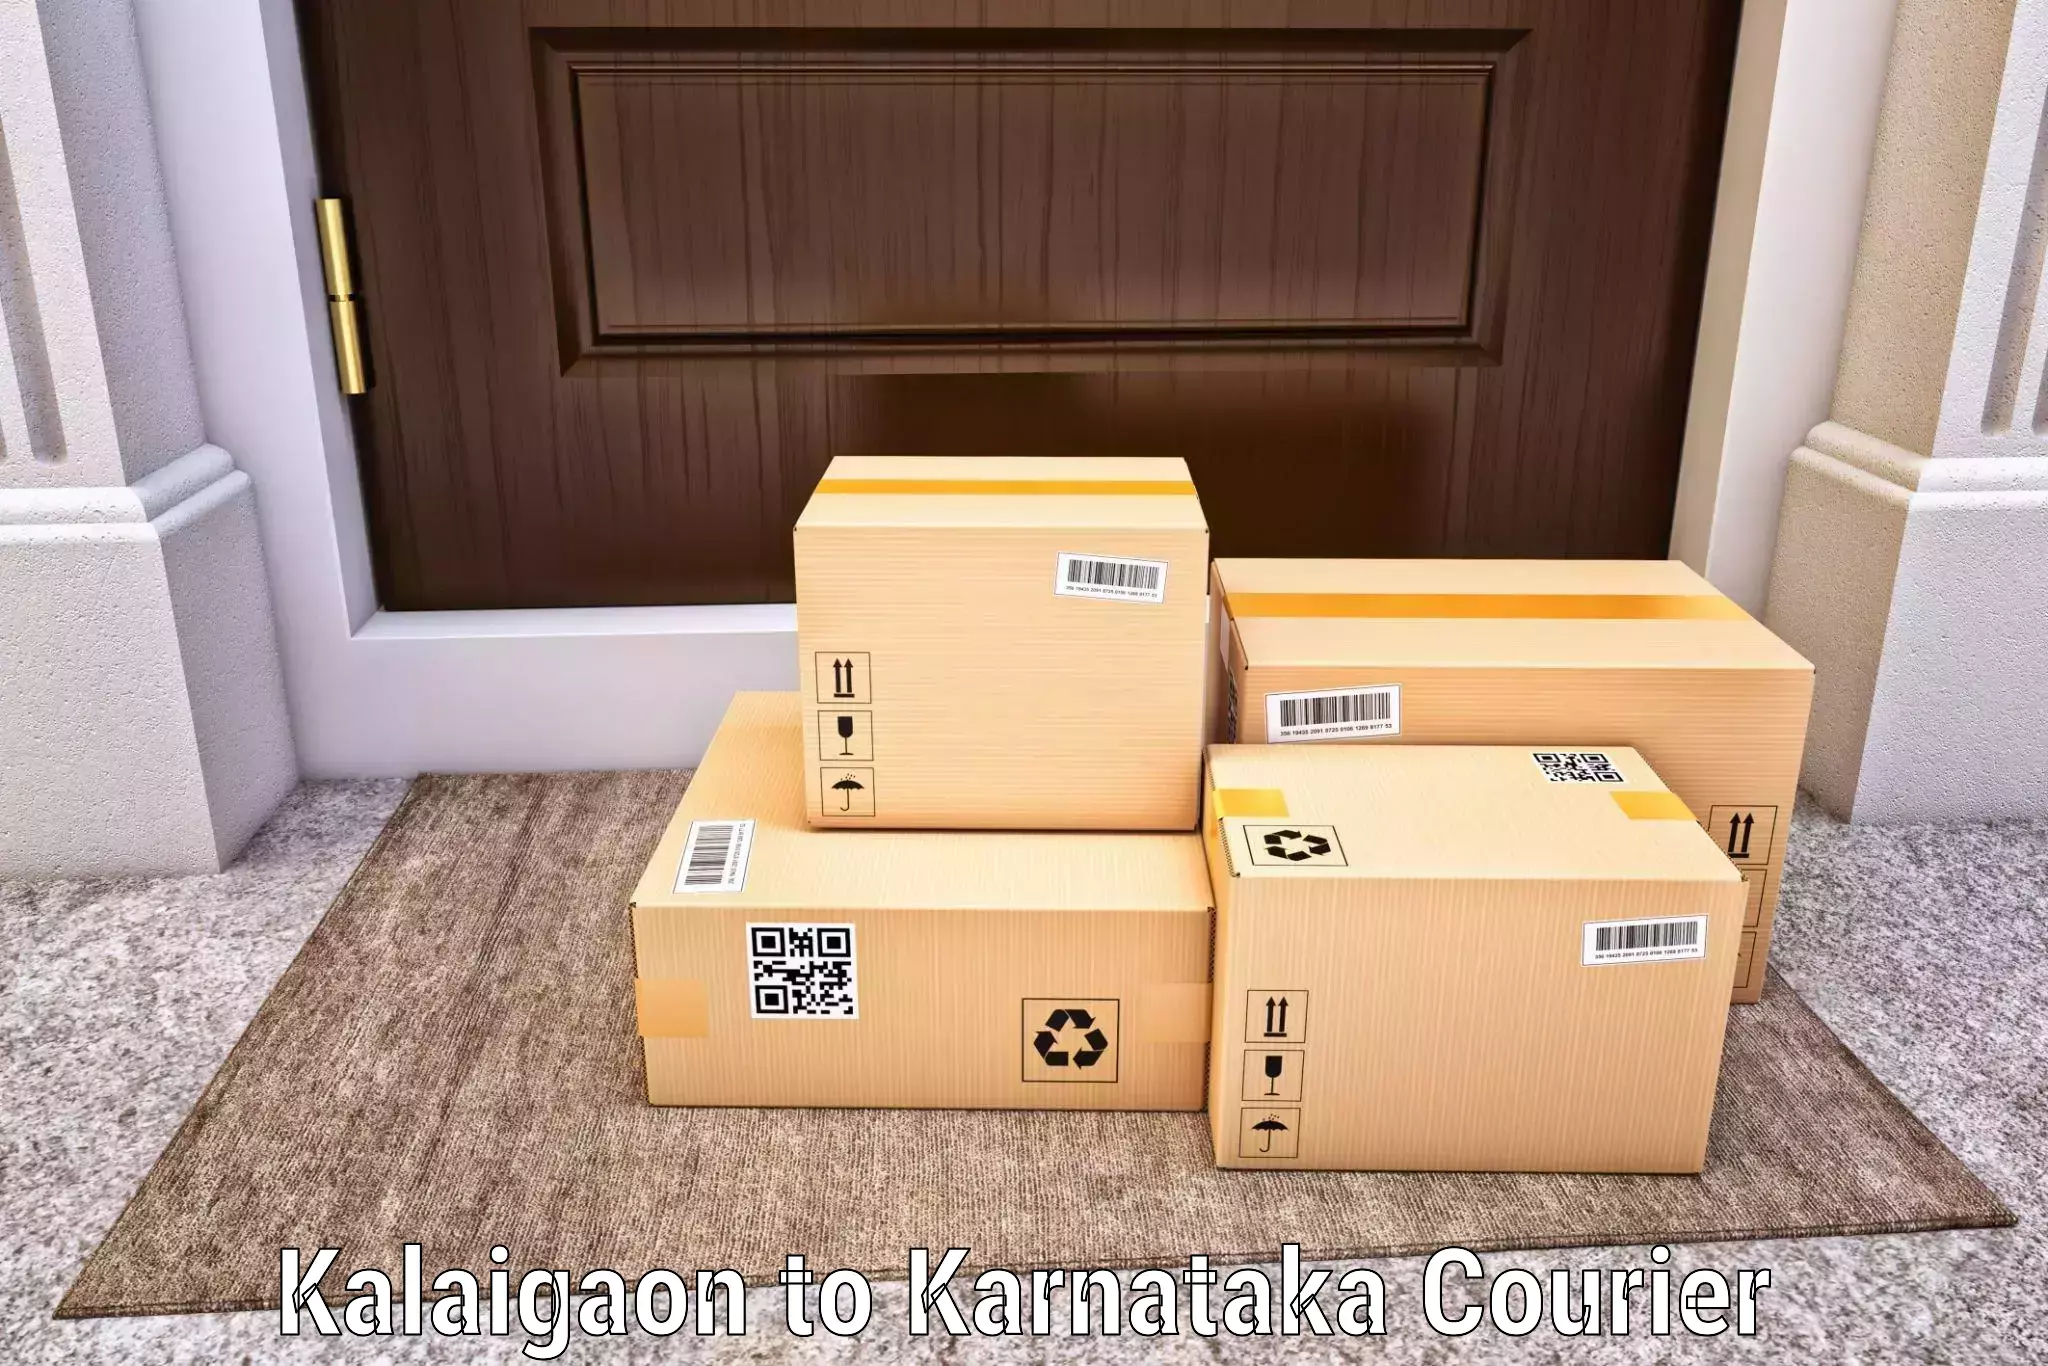 Corporate courier solutions Kalaigaon to Aland Kalaburagi